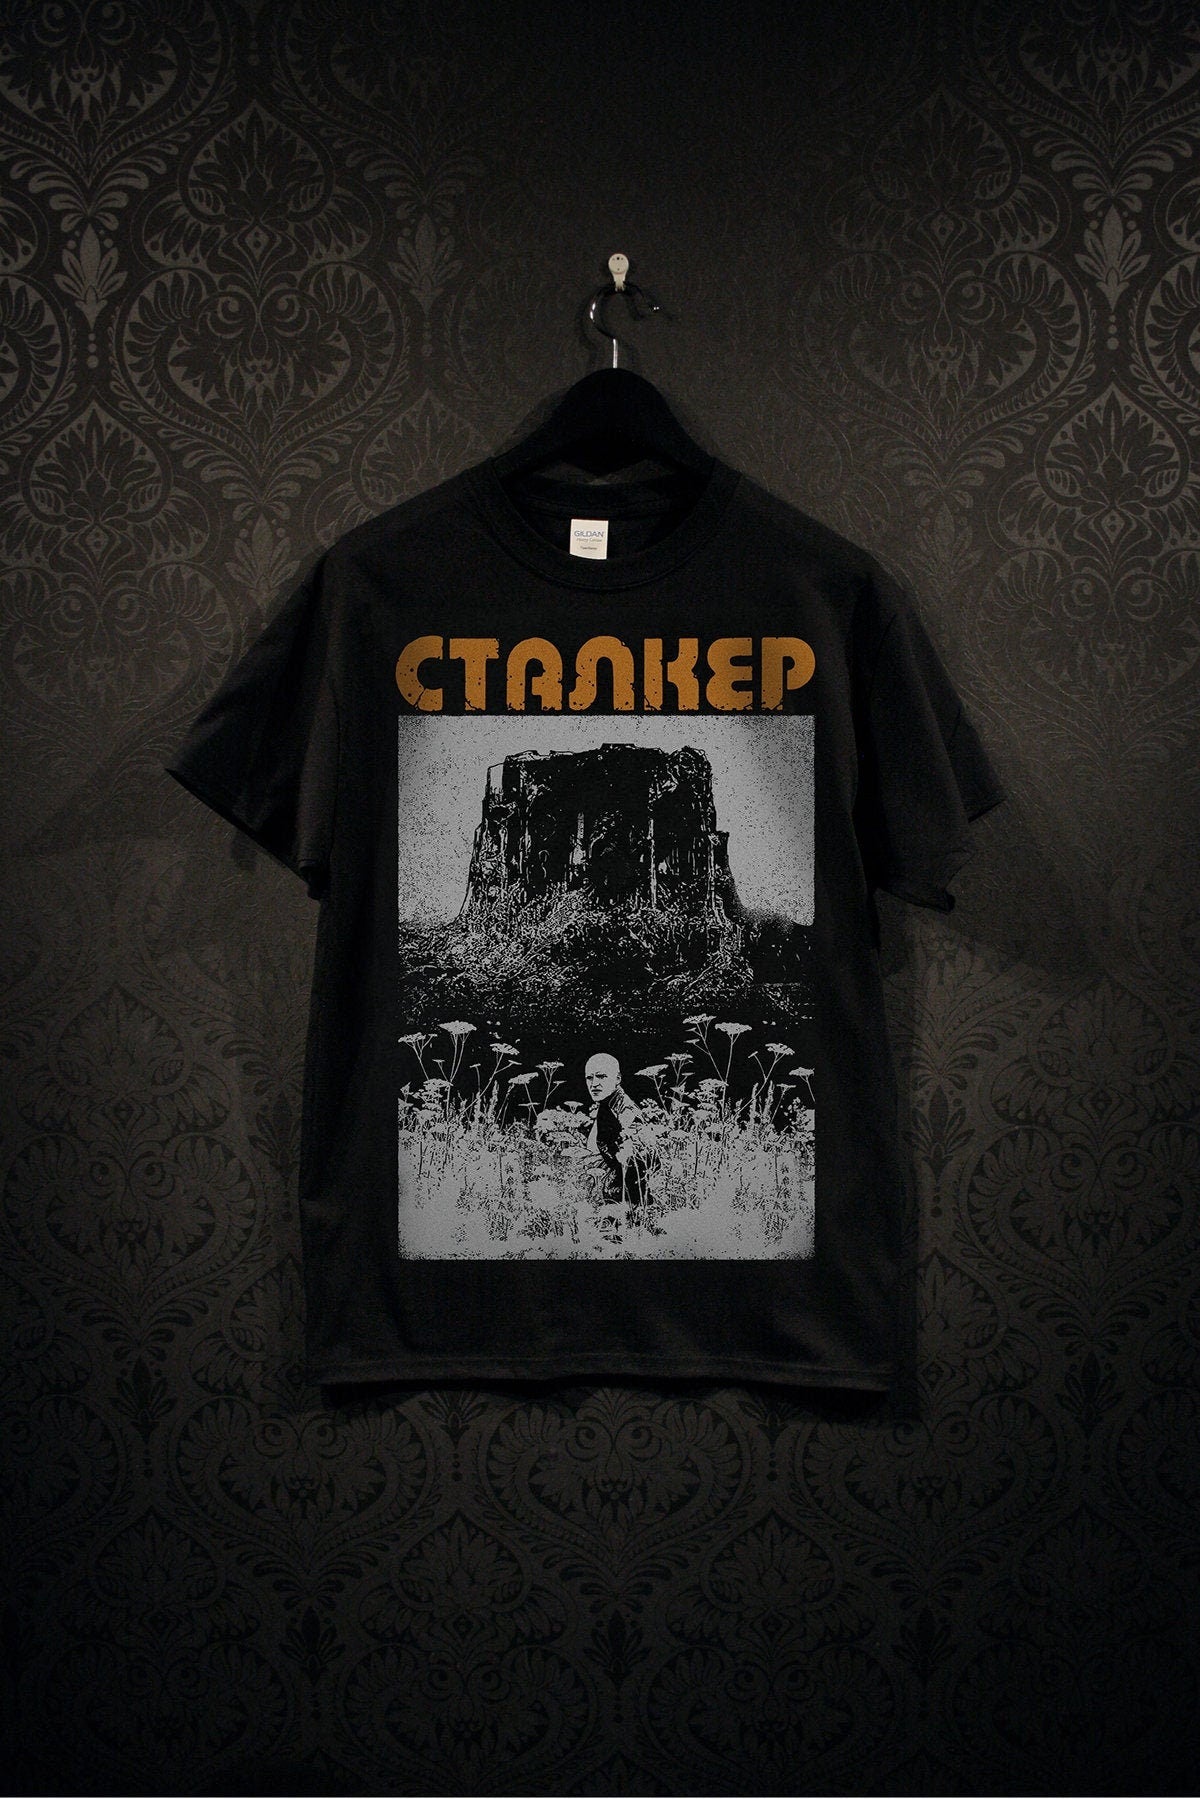 STALKER, the field, Andrei Tarkovsky - T-shirt